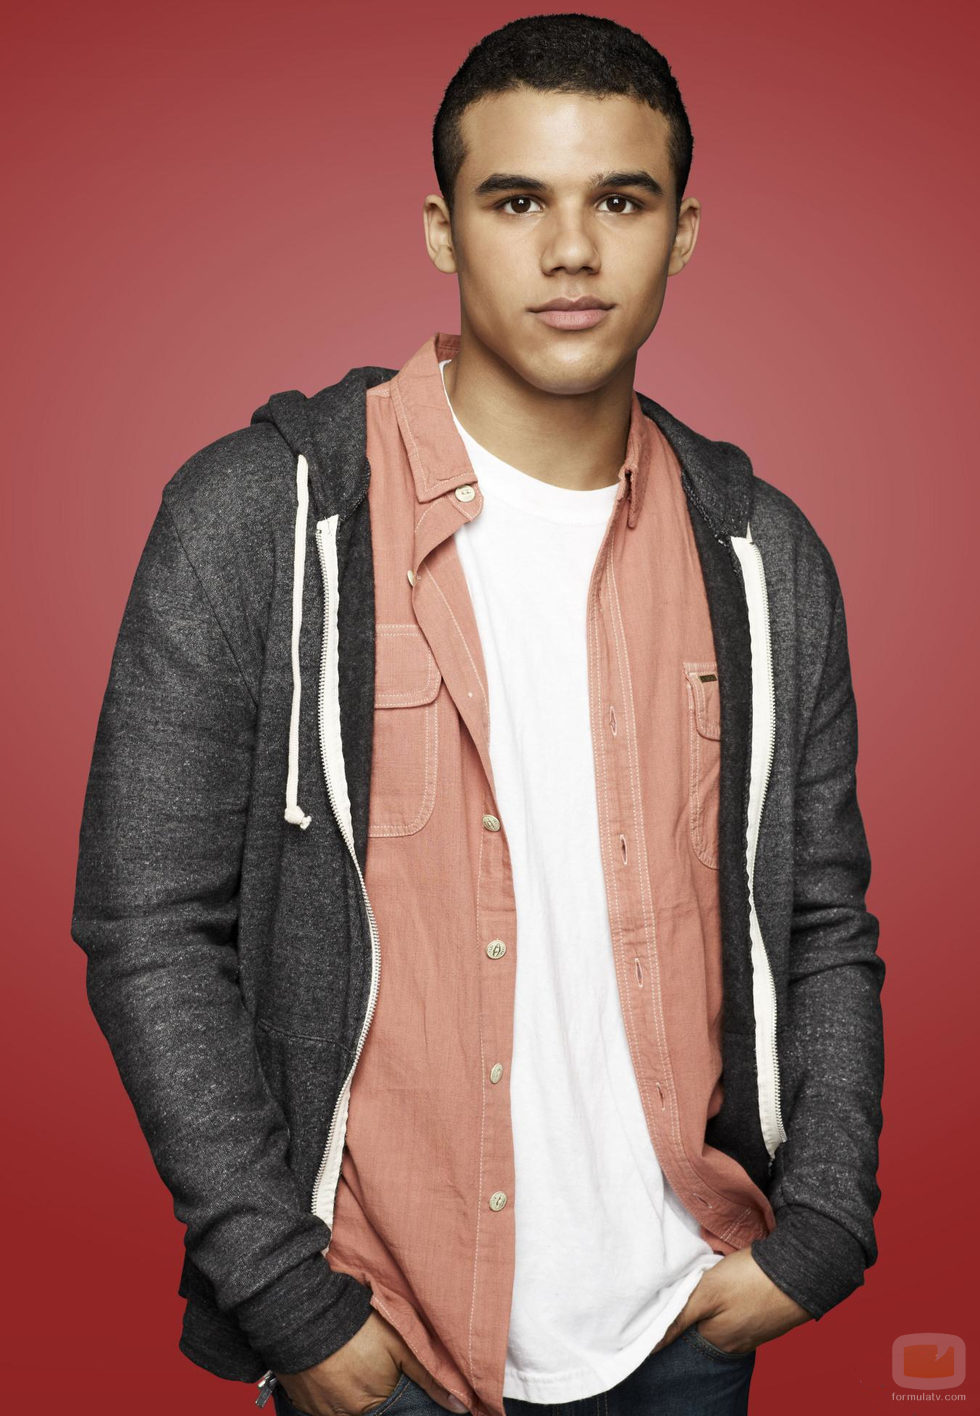 Jacob Artist se incorpora a 'Glee' en su cuarta temporada